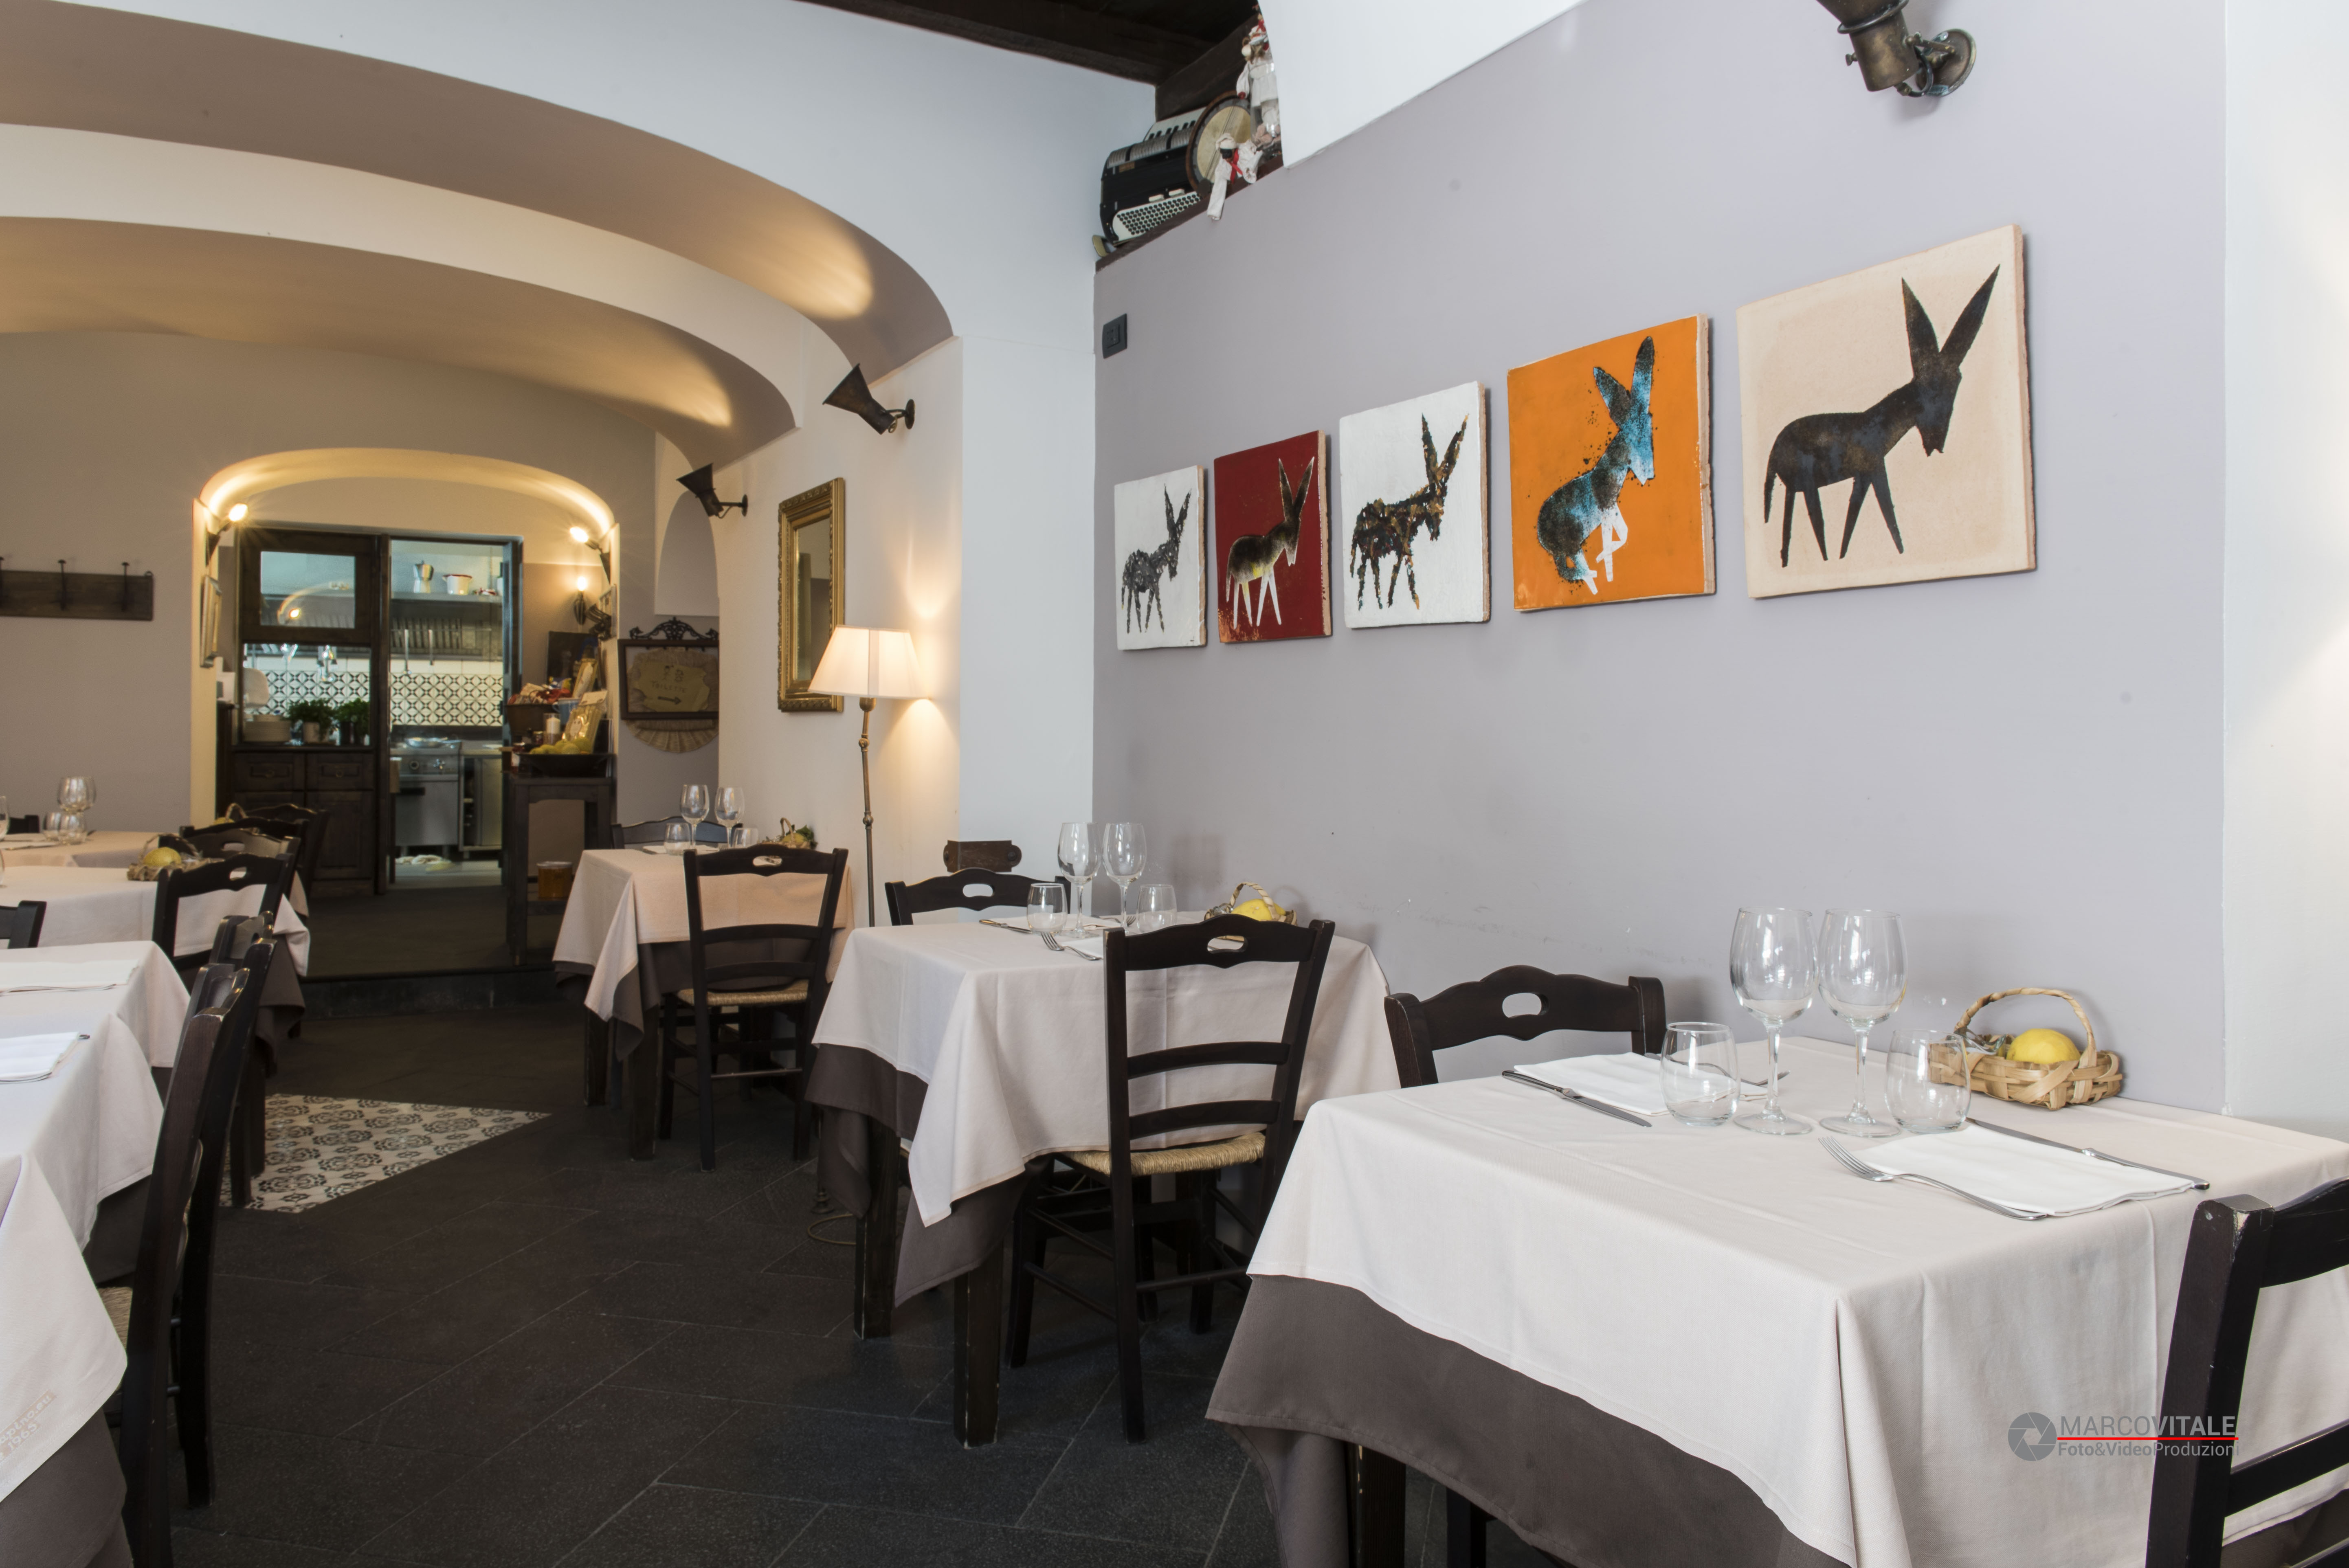 Ristorante Taverna Buonvicino -Fotografo di Interni - Marco Vitale